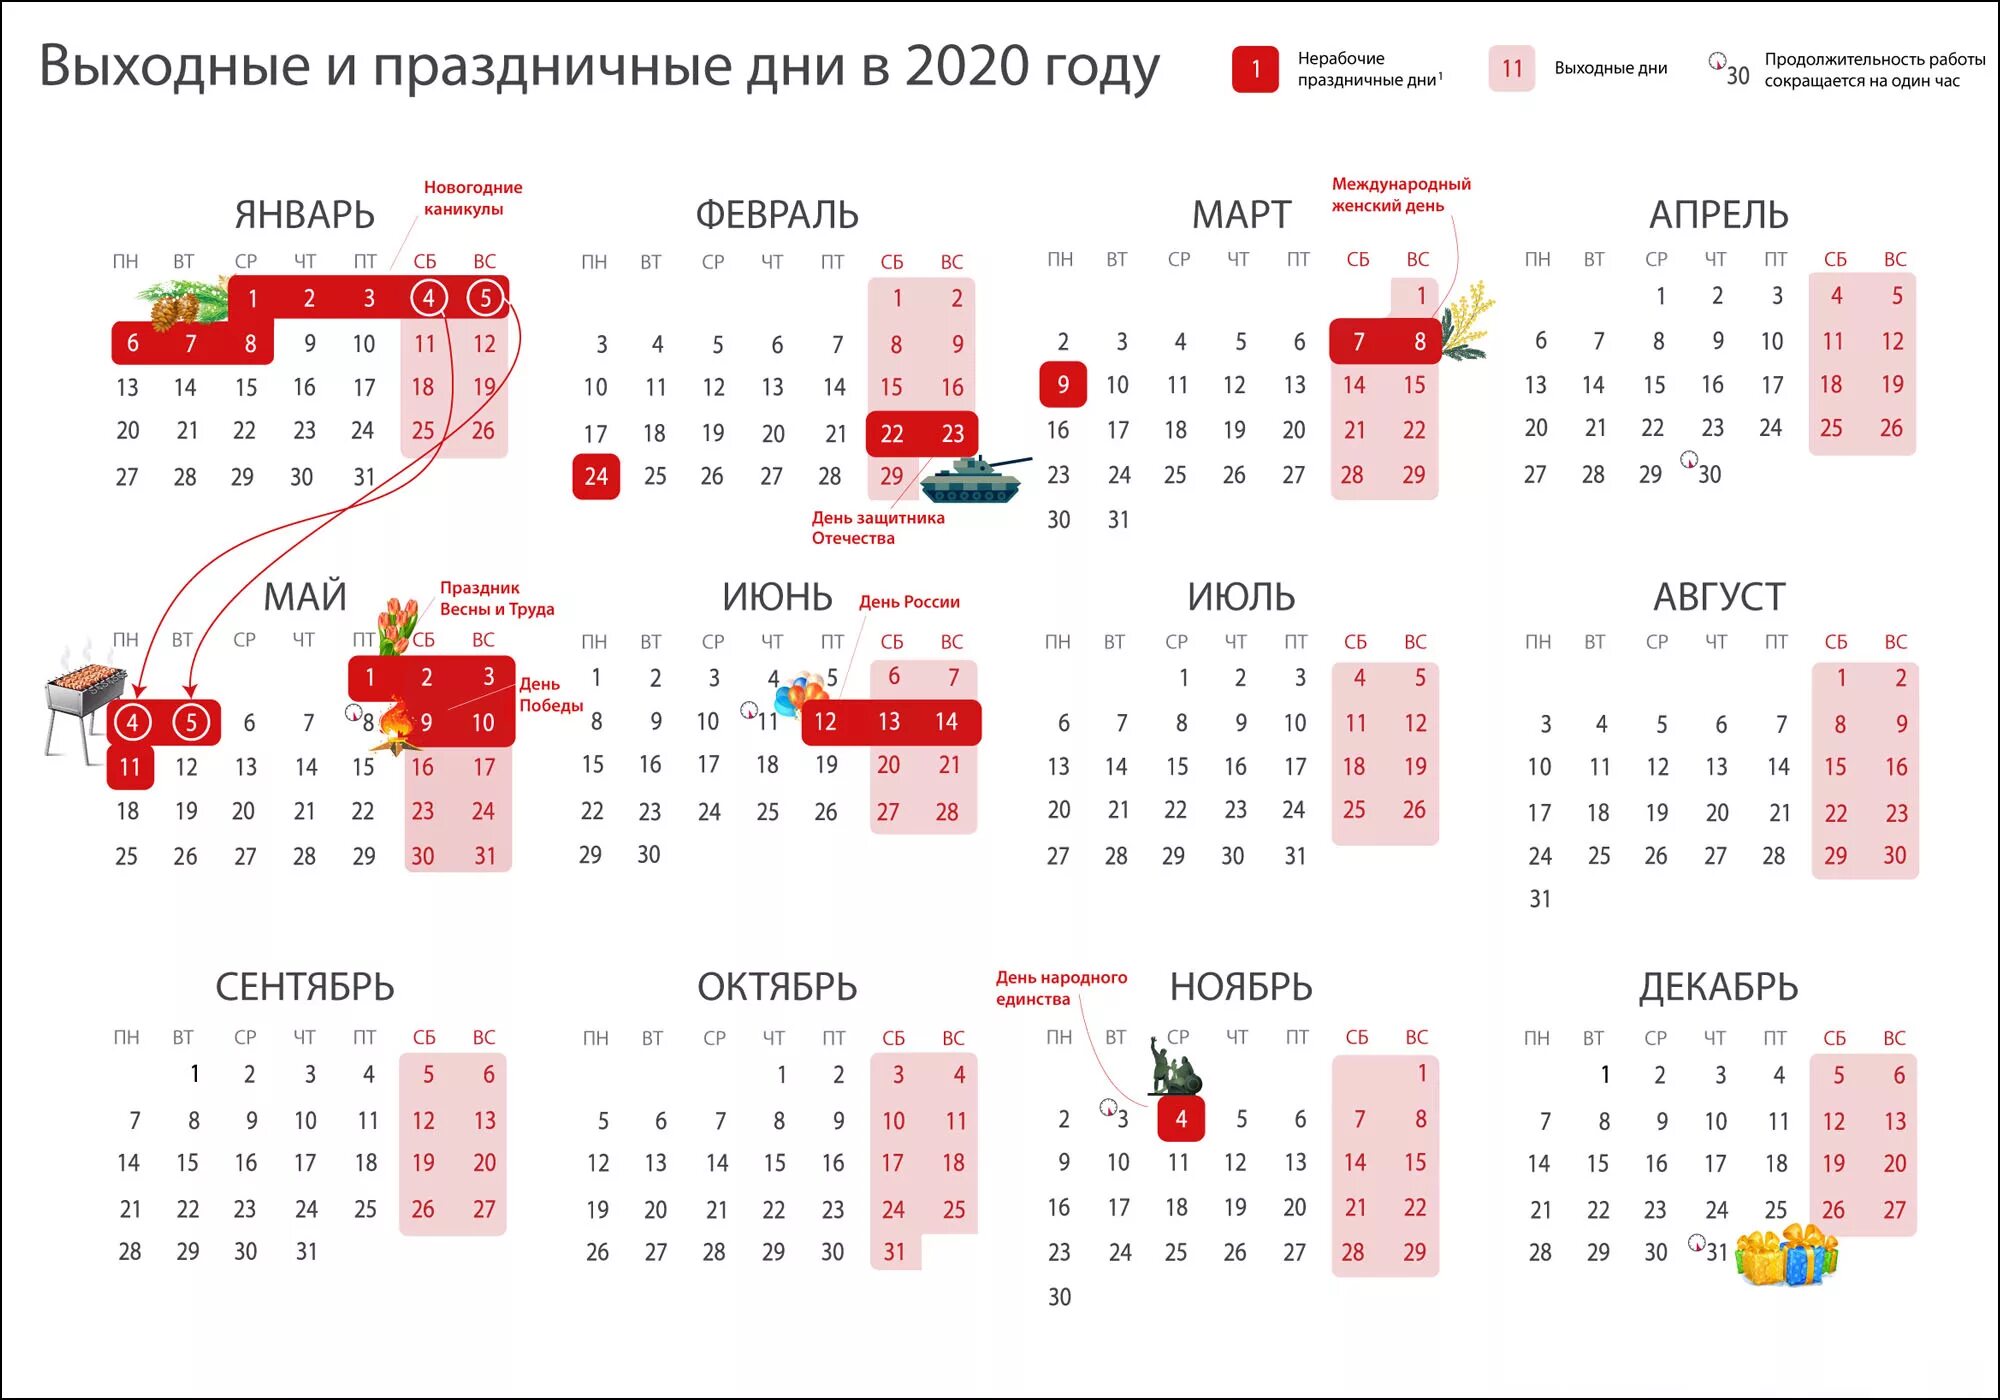 Праздники и выходные дни в 2020 году. Календарь рабочих дней 2020 год. Выходные и праздничные дни в 2020 году в России календарь. Календарь 2020 года производственный праздничными днями и выходными. Сколько времени прошло с января 2020